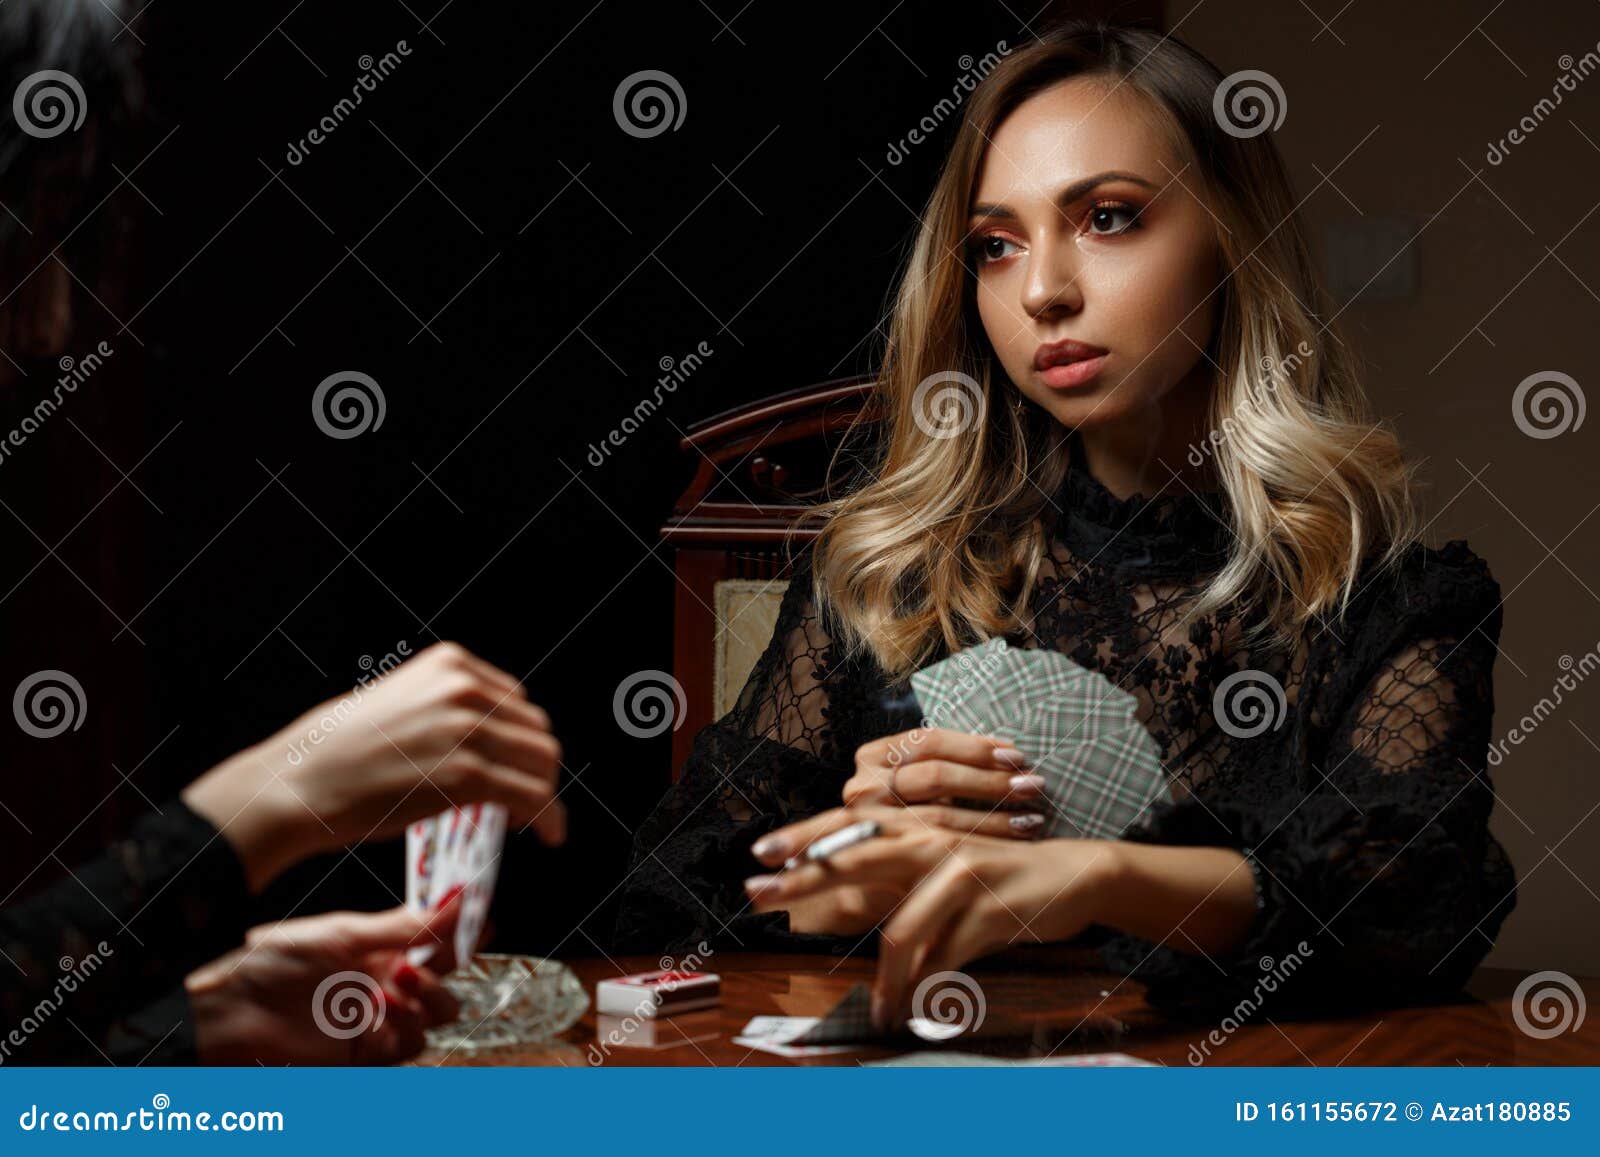 девочка играет с мальчиком в карты на раздевание